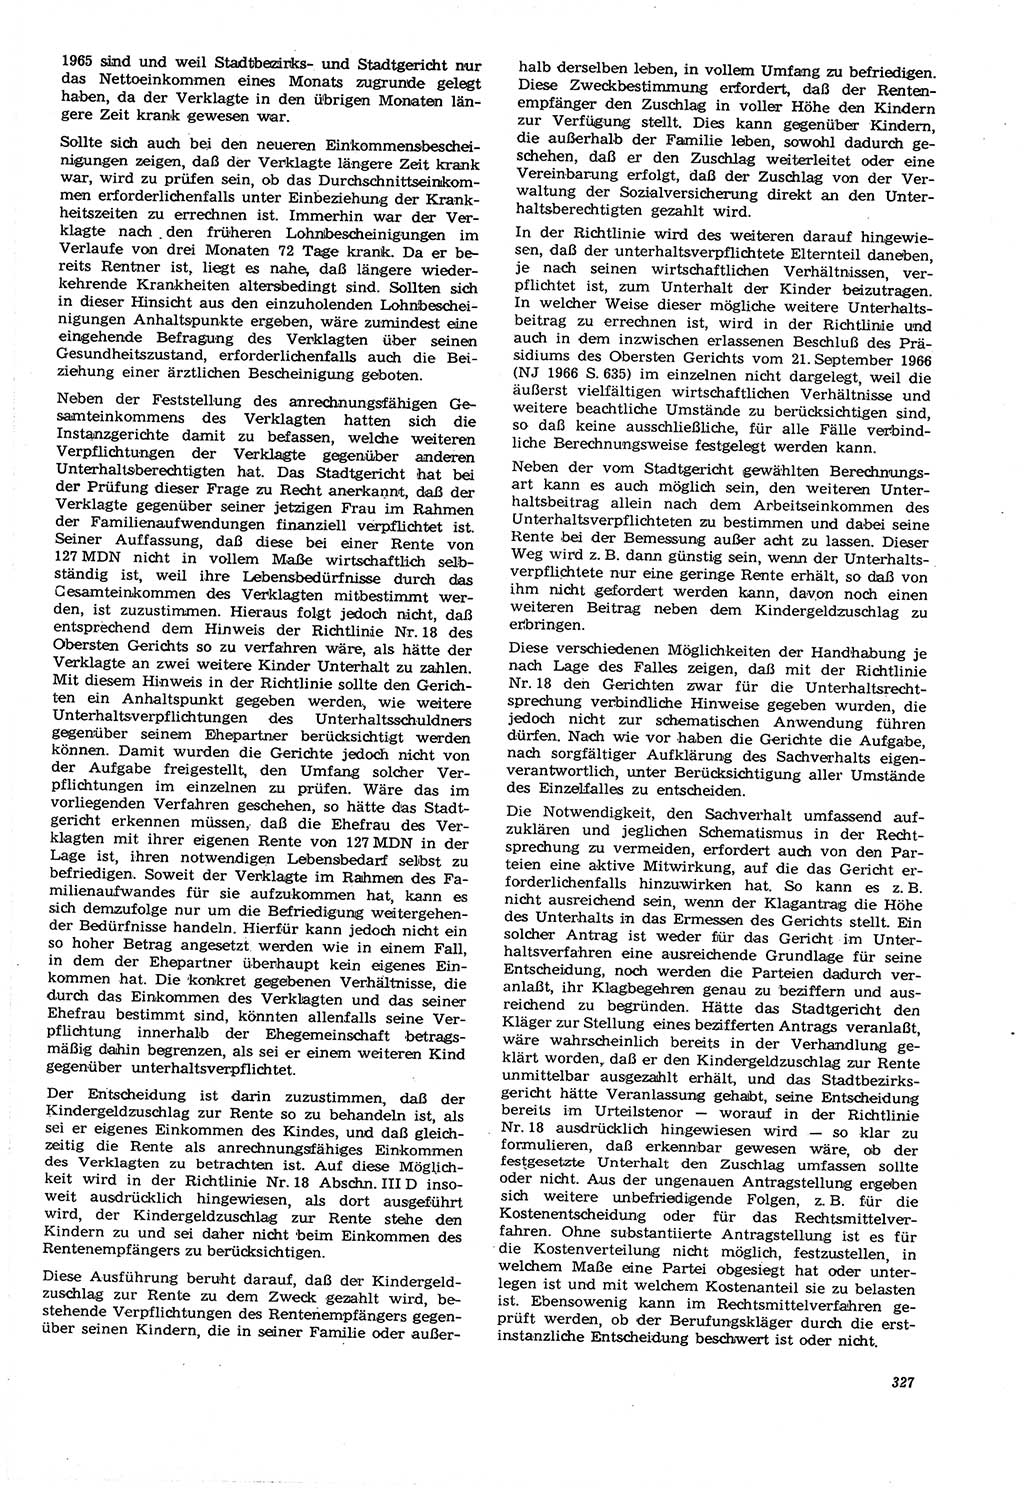 Neue Justiz (NJ), Zeitschrift für Recht und Rechtswissenschaft [Deutsche Demokratische Republik (DDR)], 21. Jahrgang 1967, Seite 327 (NJ DDR 1967, S. 327)